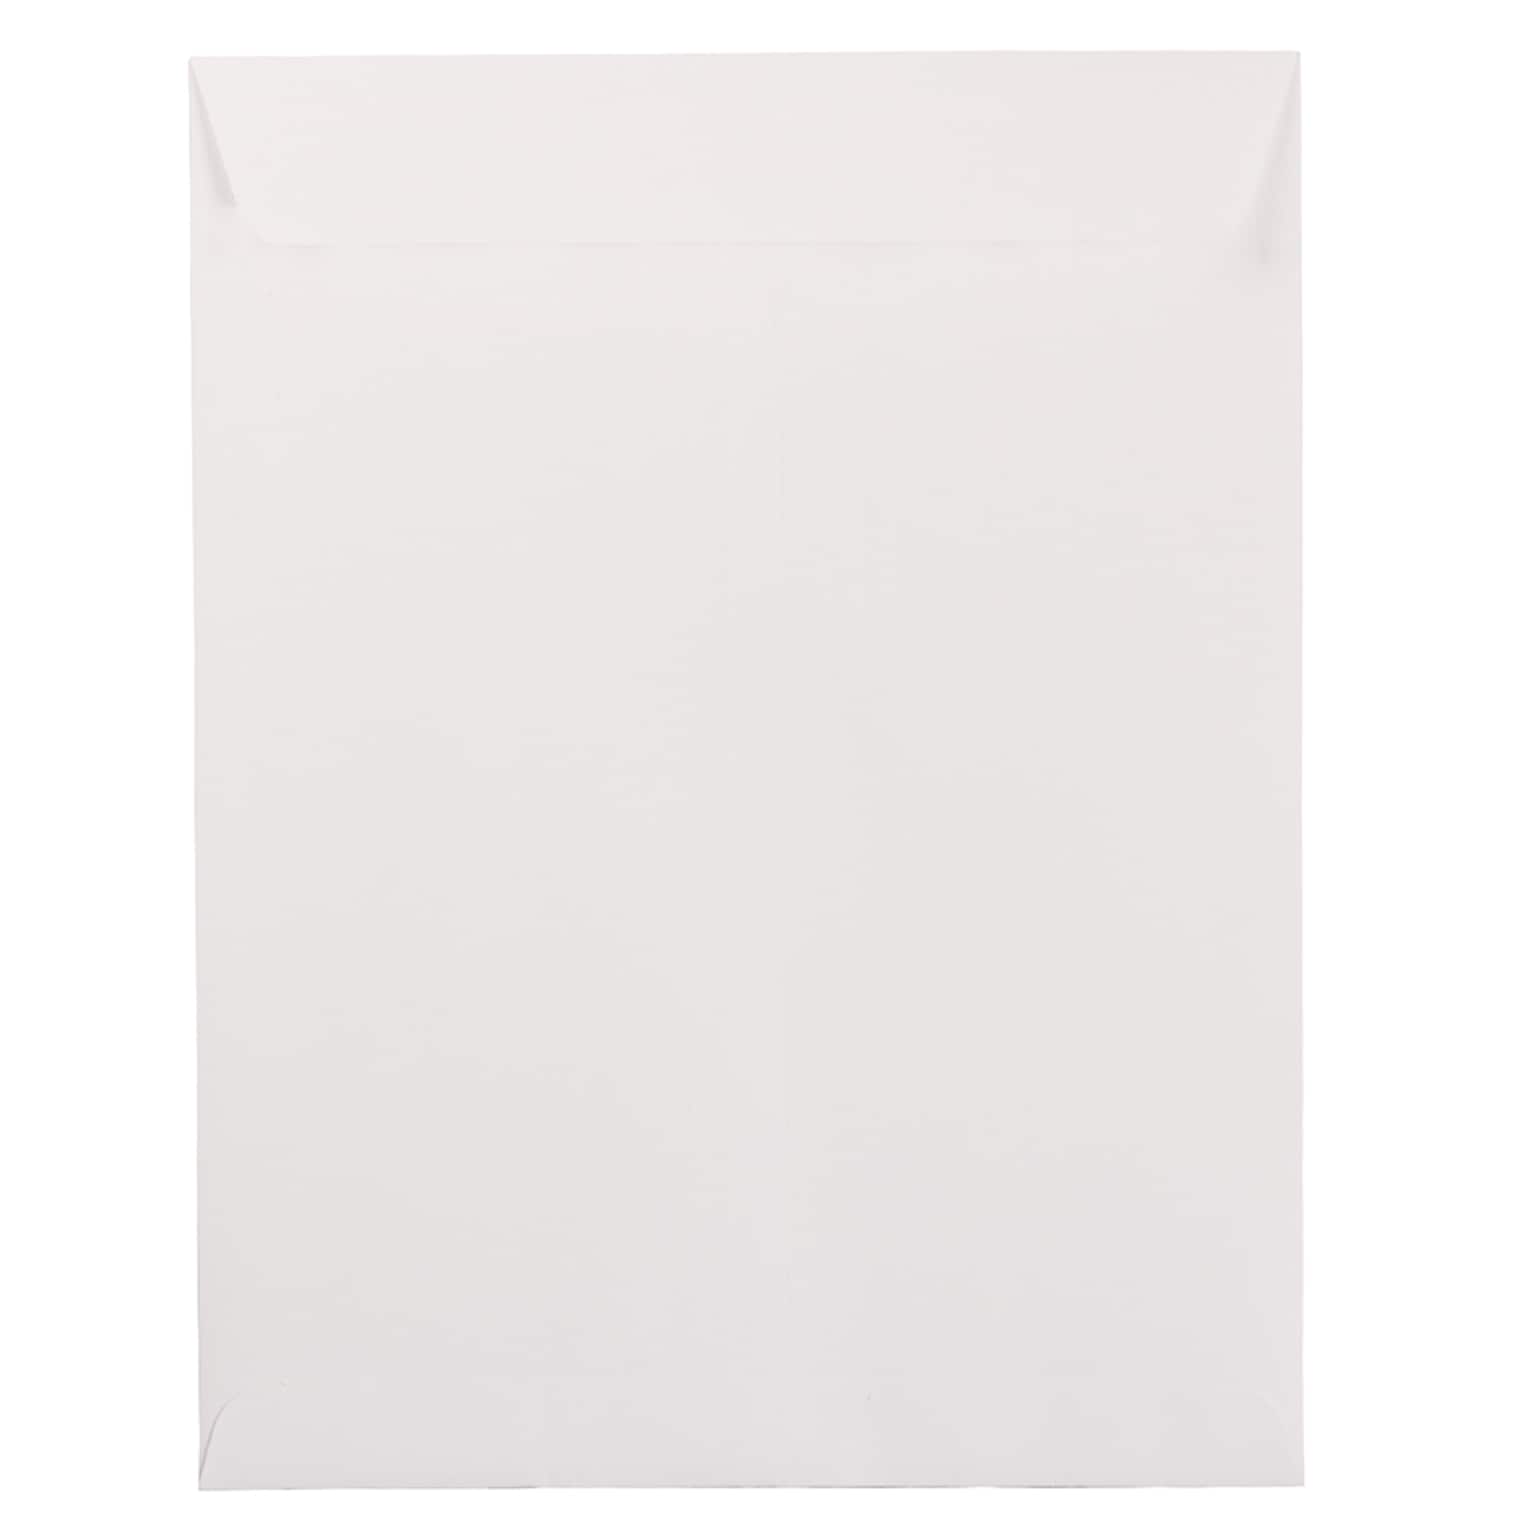 JAM PAPER Open End Catalog Envelopes, 10 x 13, White, 50/Pack (526SE4296)